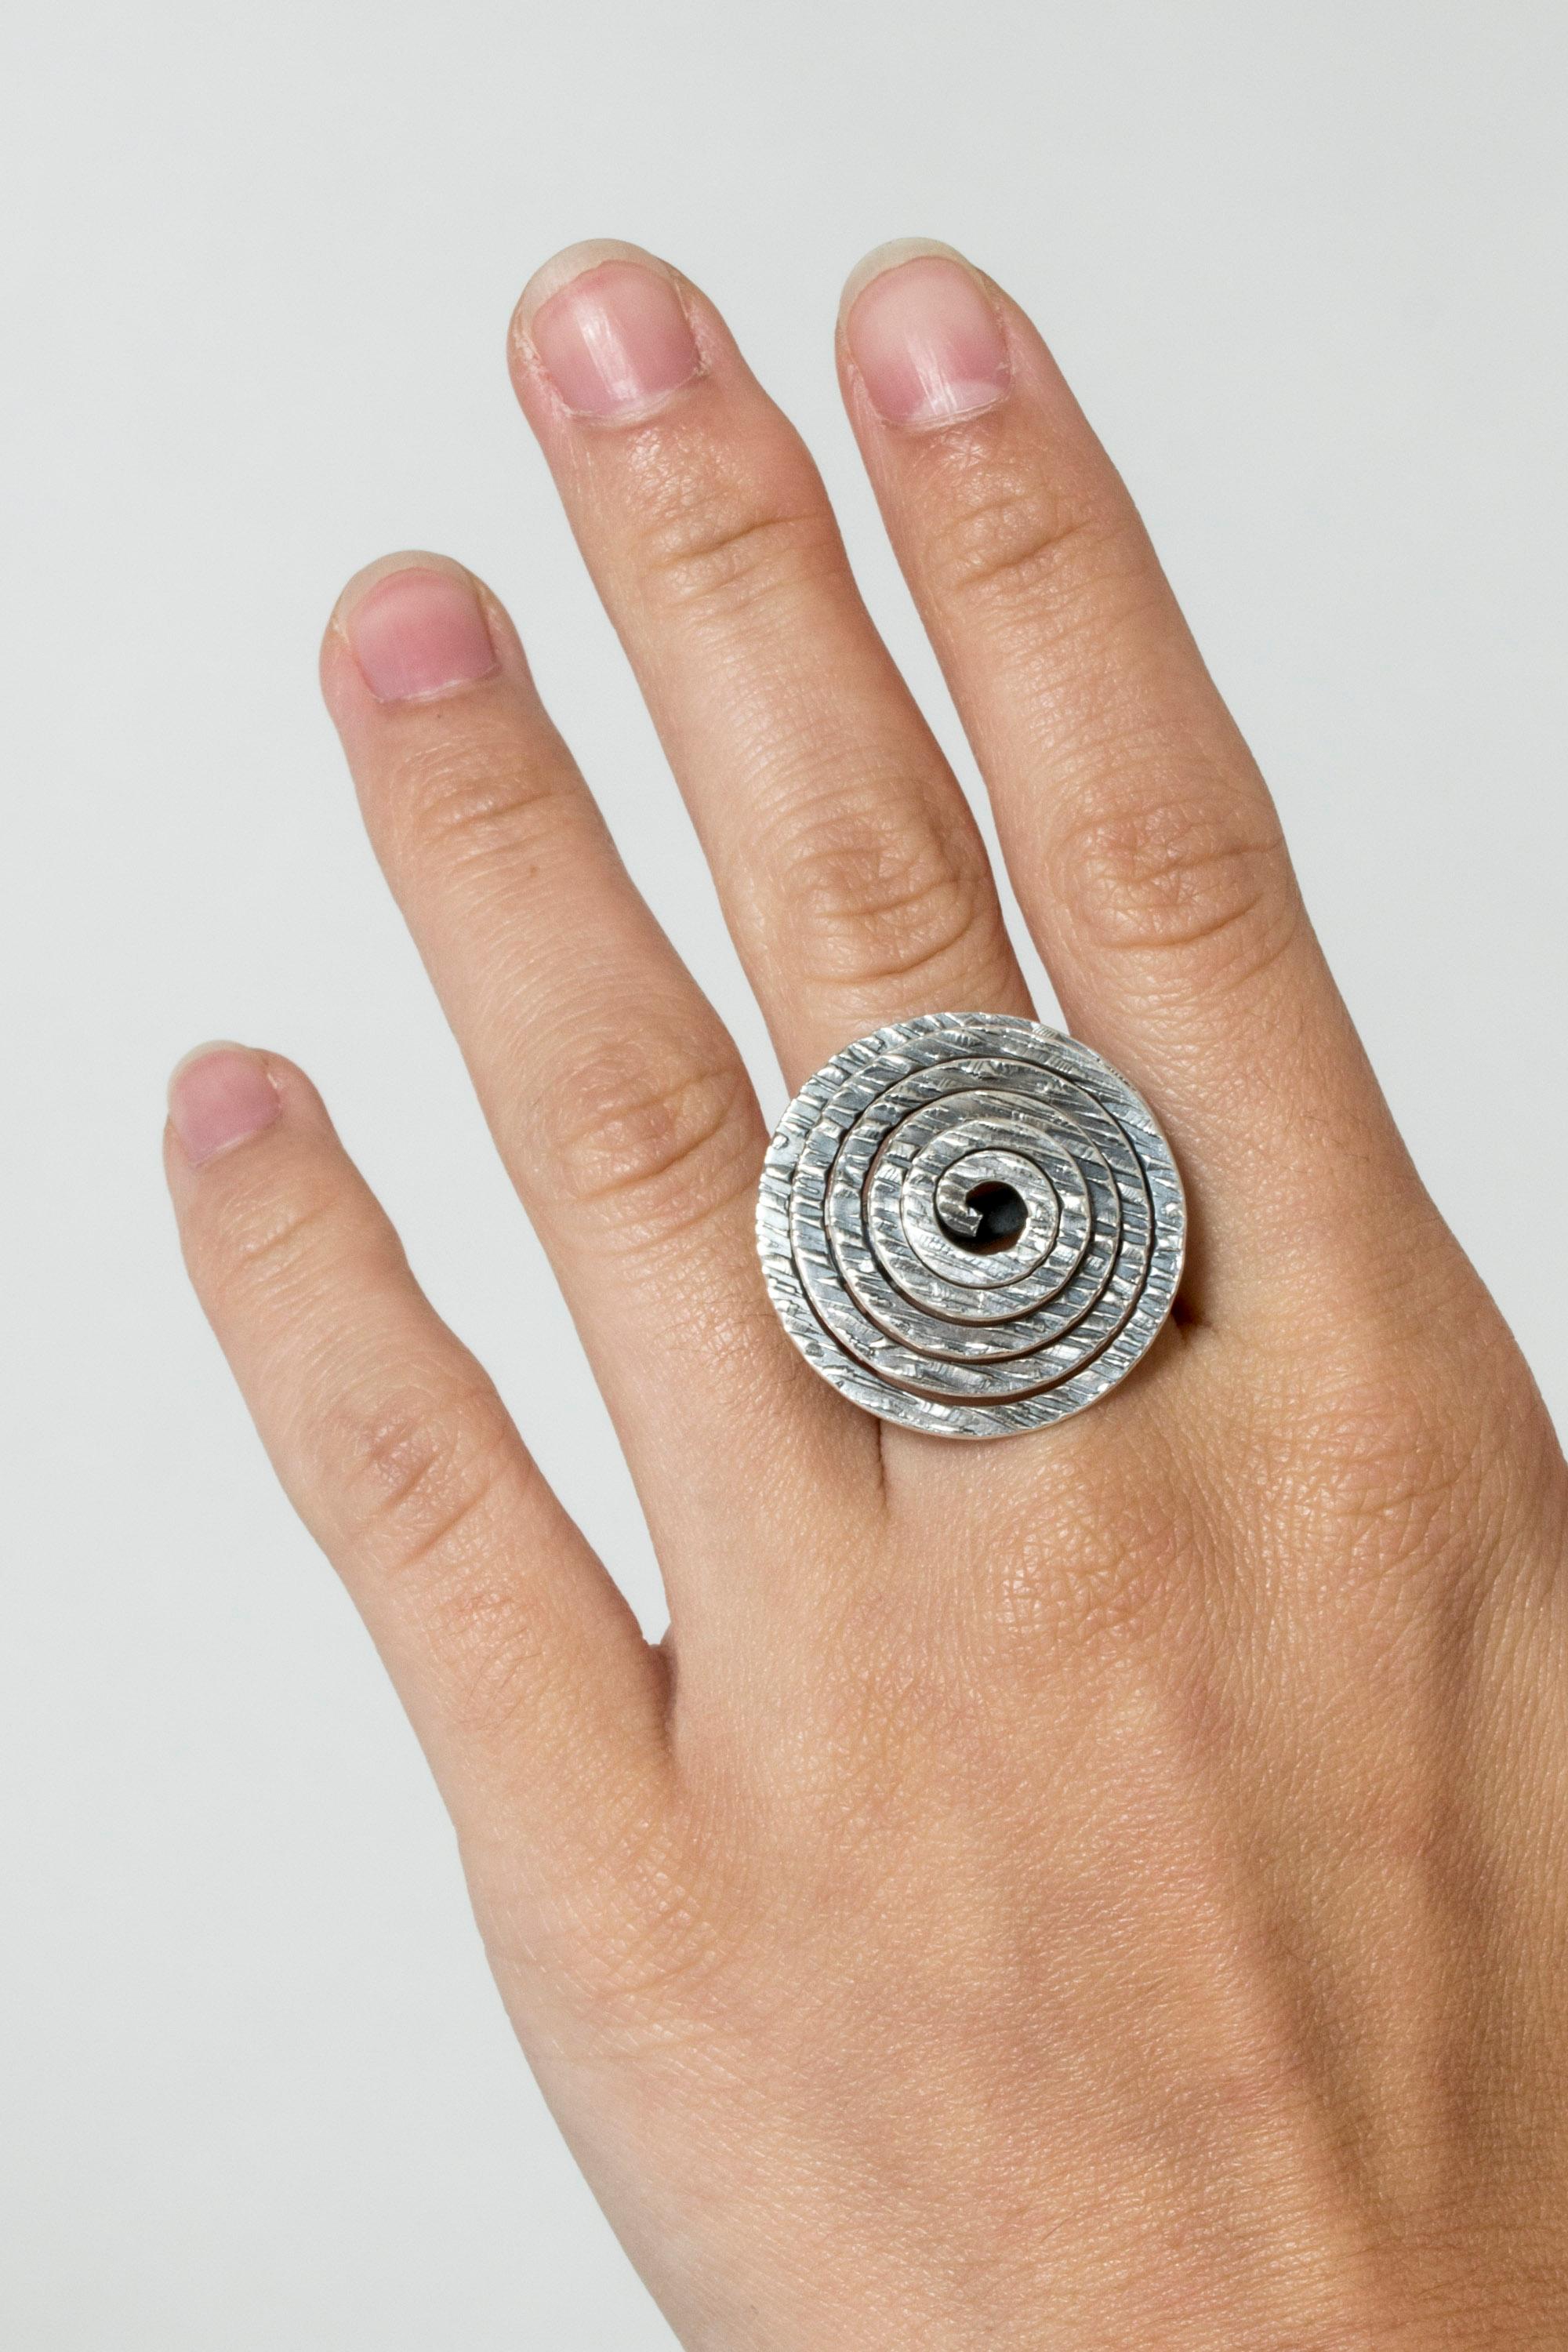 Wunderschöner, ausdrucksstarker Silberring von Elis Kauppi, mit einer großen Silberspirale. Die Oberfläche der Spirale ist mit einem organischen Muster versehen.